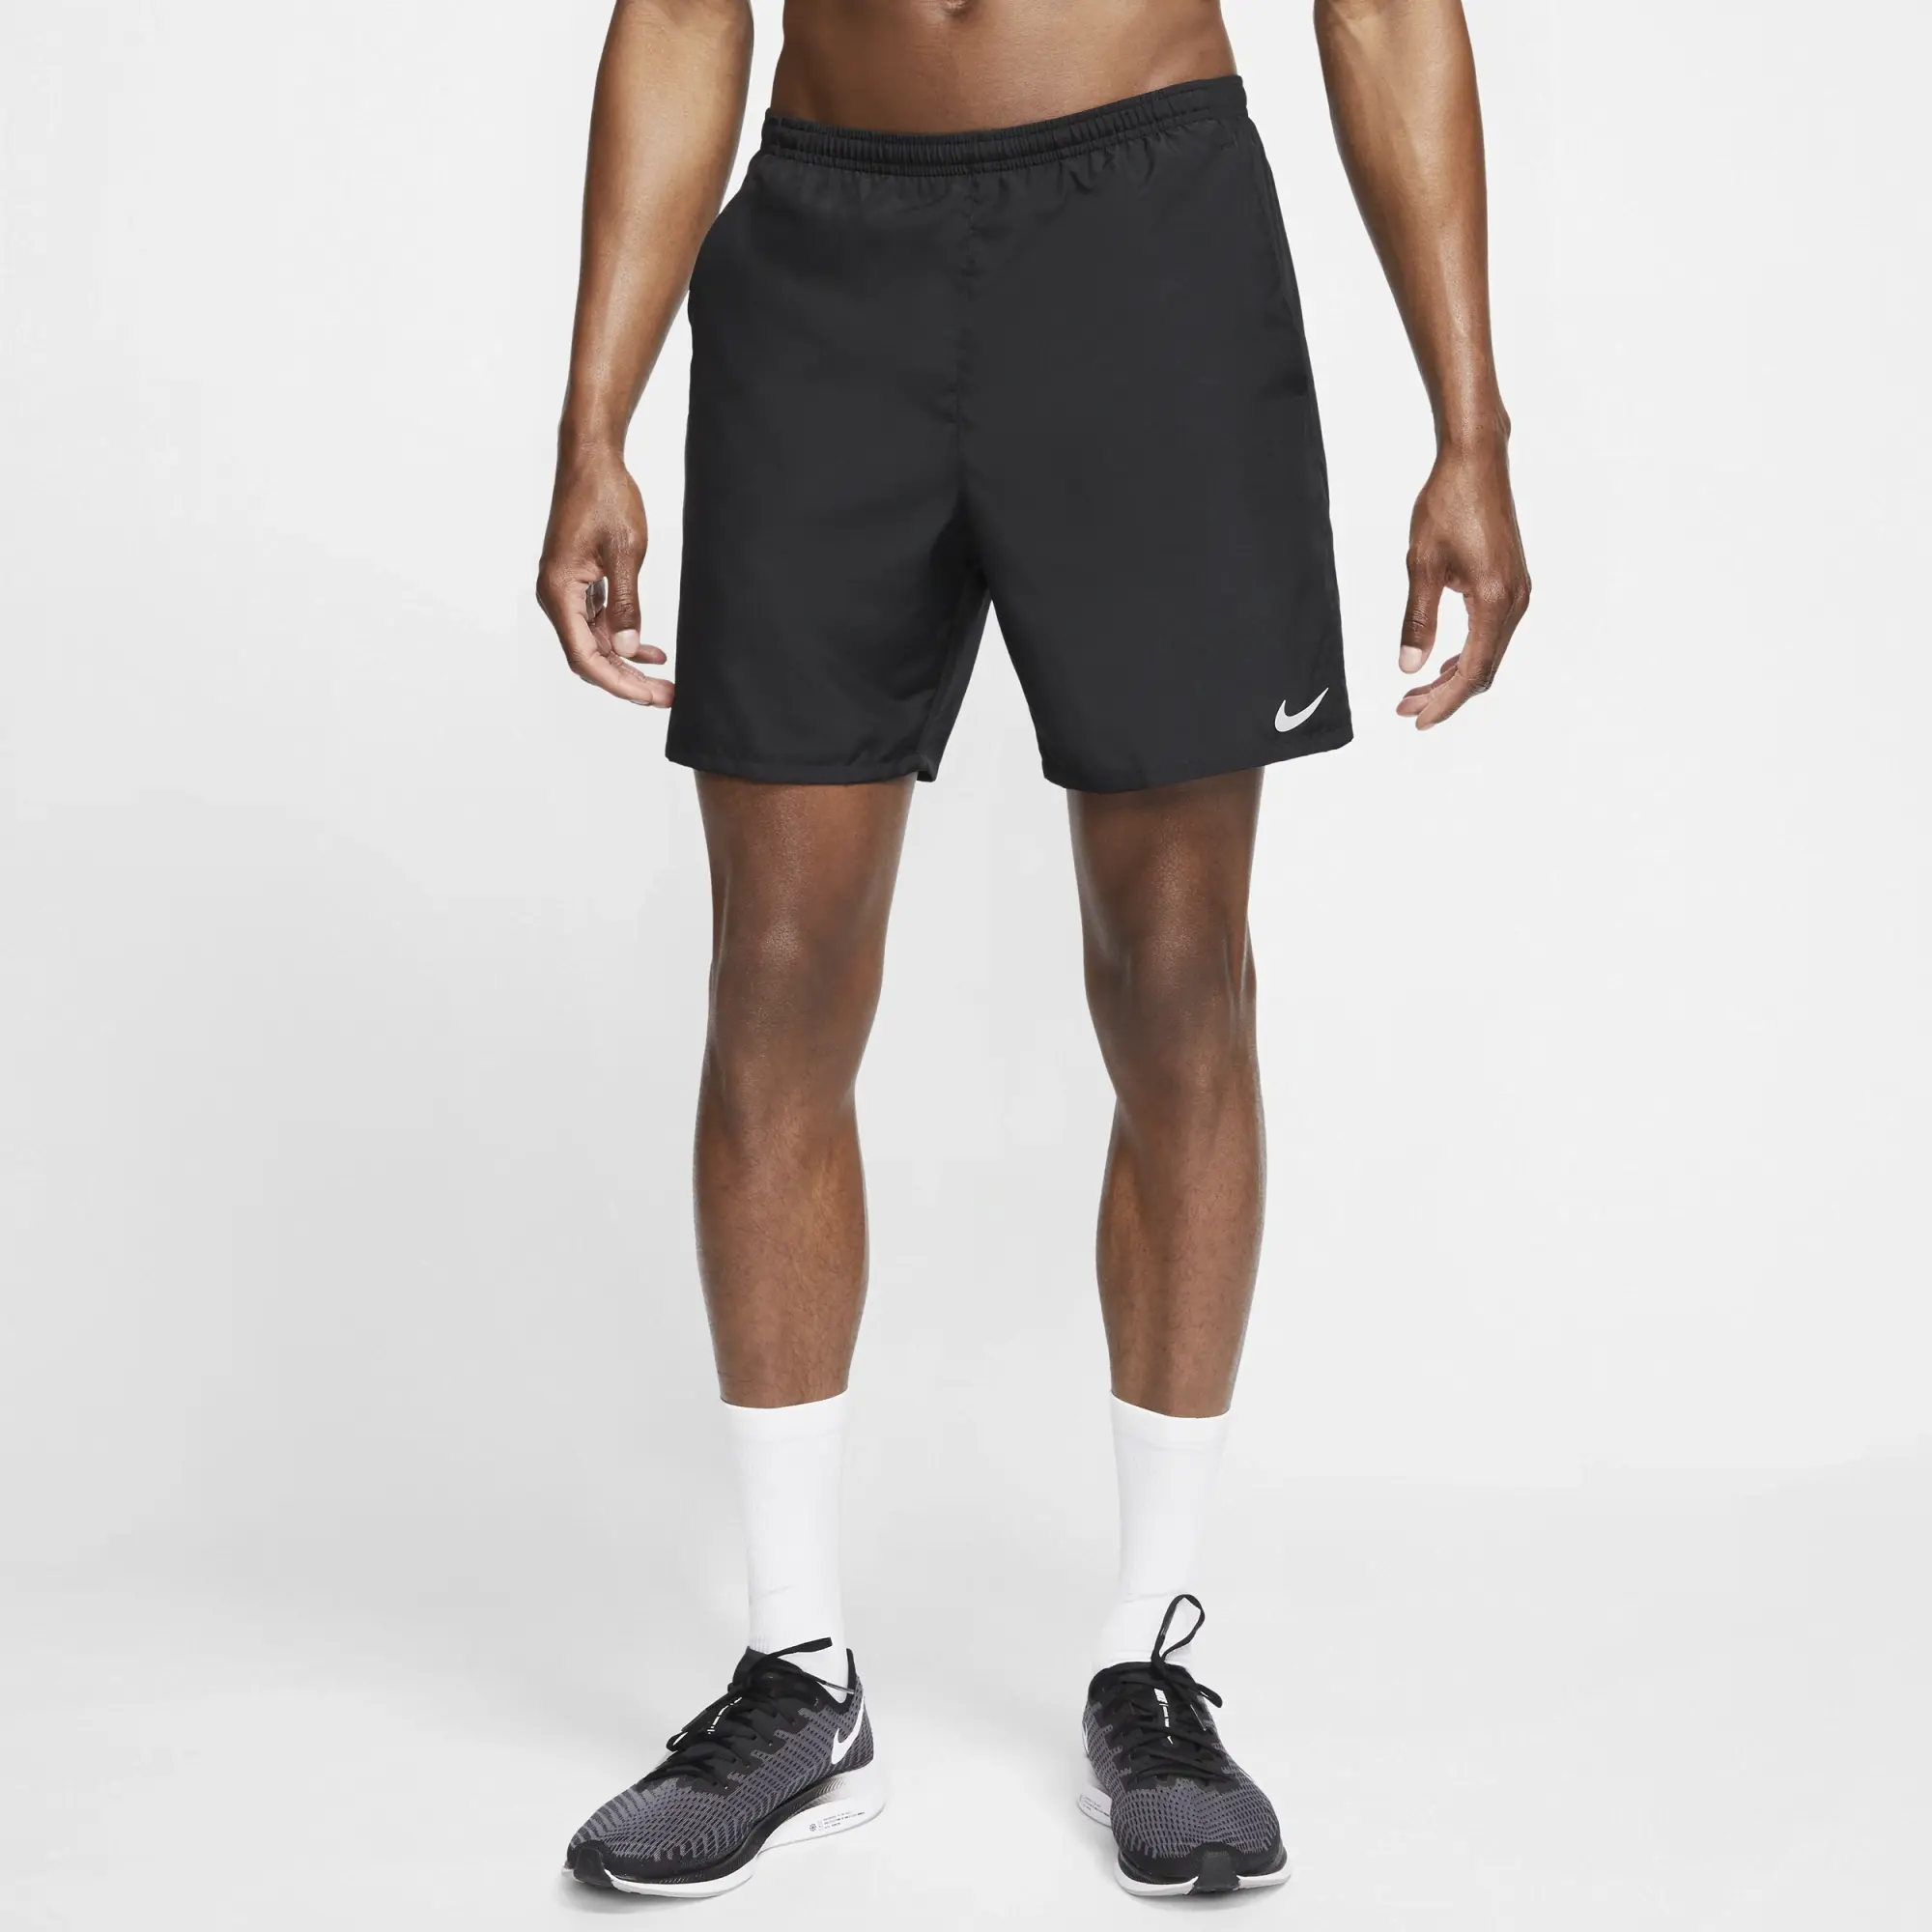 Nike 7 Inch Running Shorts - Black, Black